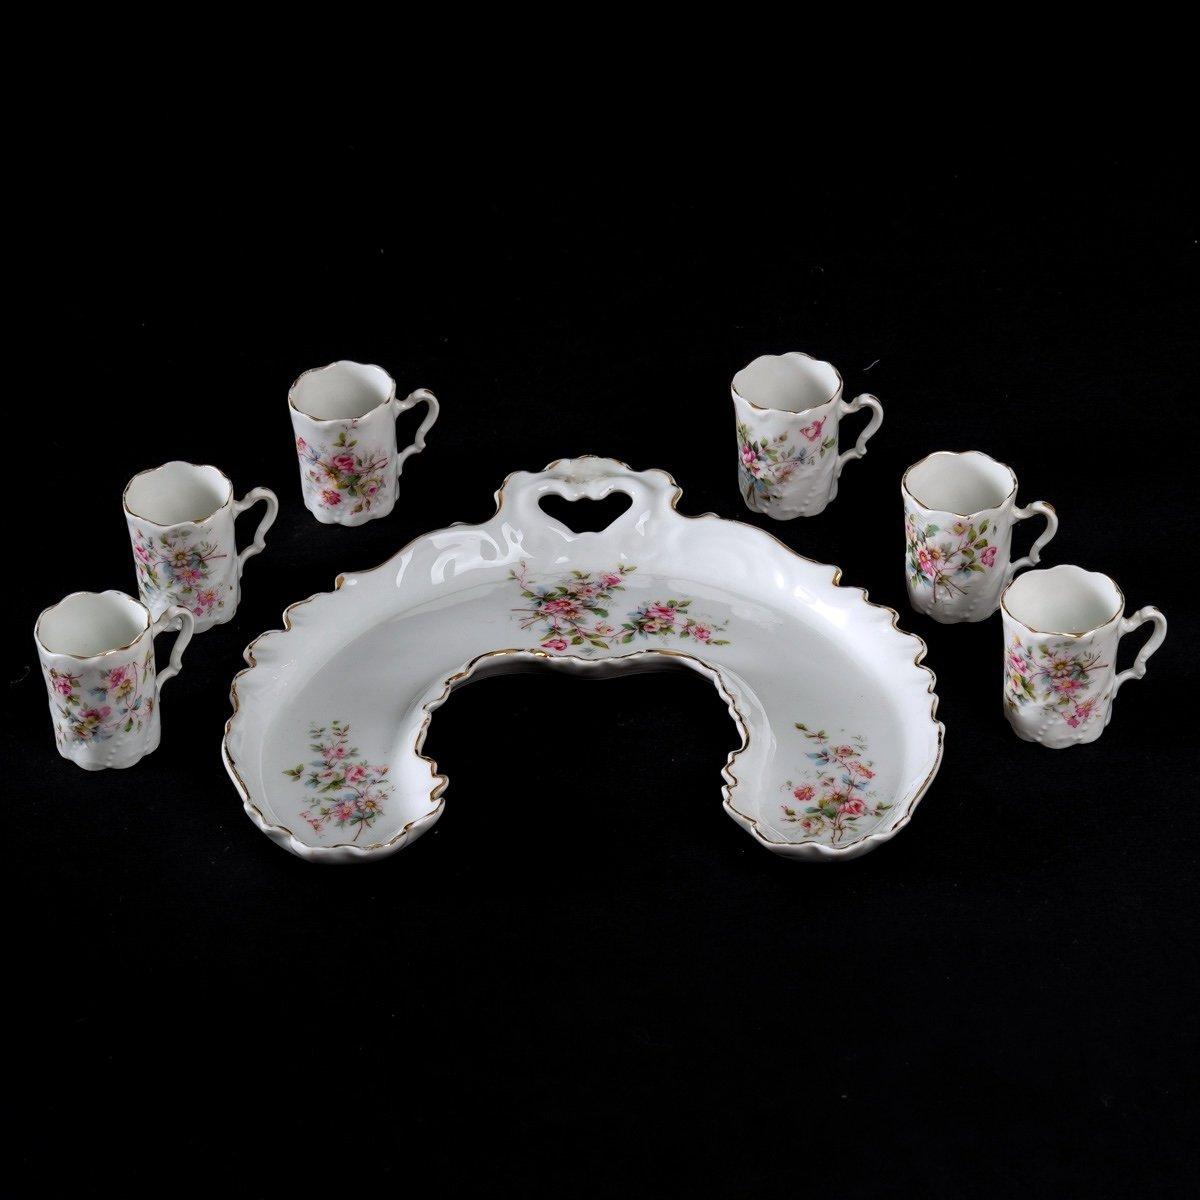 Charmant service à moka en porcelaine de Sèvres.
Il se compose de six tasses et d'un plateau en forme de 